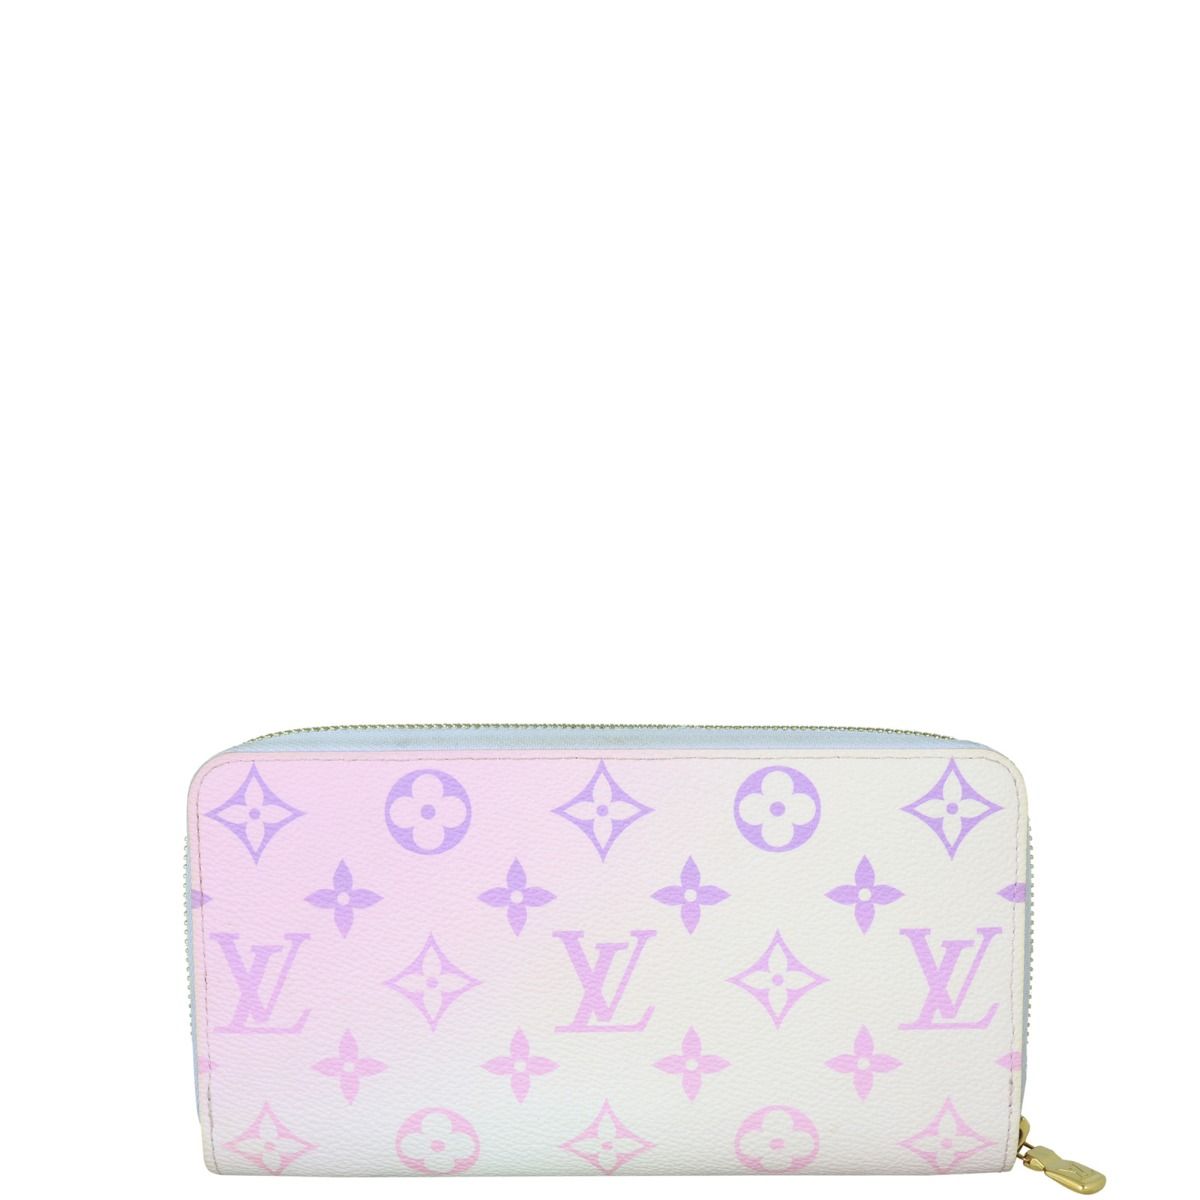 Louis Vuitton Zippy Wallet Gradient Pastel Light Pink in Coated